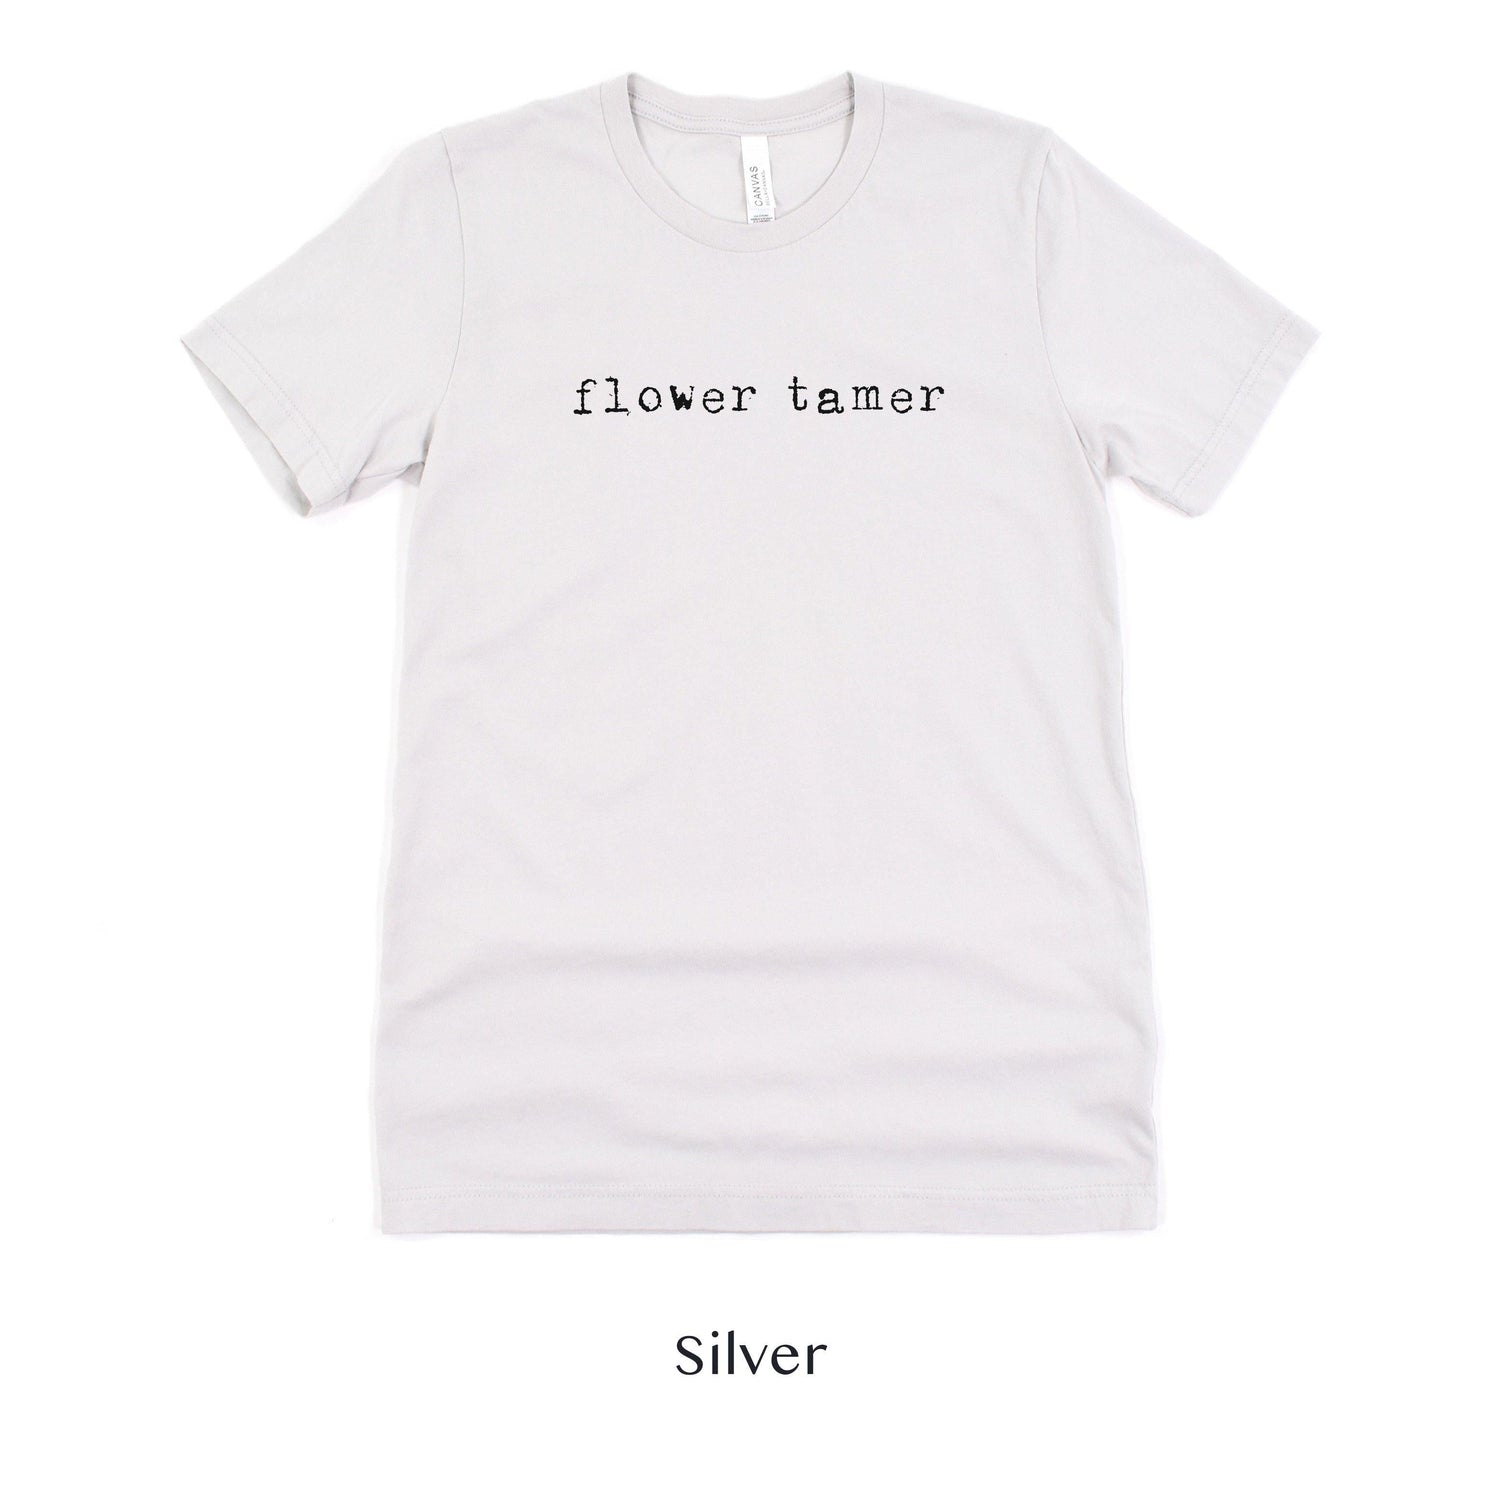 Flower Tamer - Florist Gift for Her - Short-sleeve Tee by Oaklynn Lane